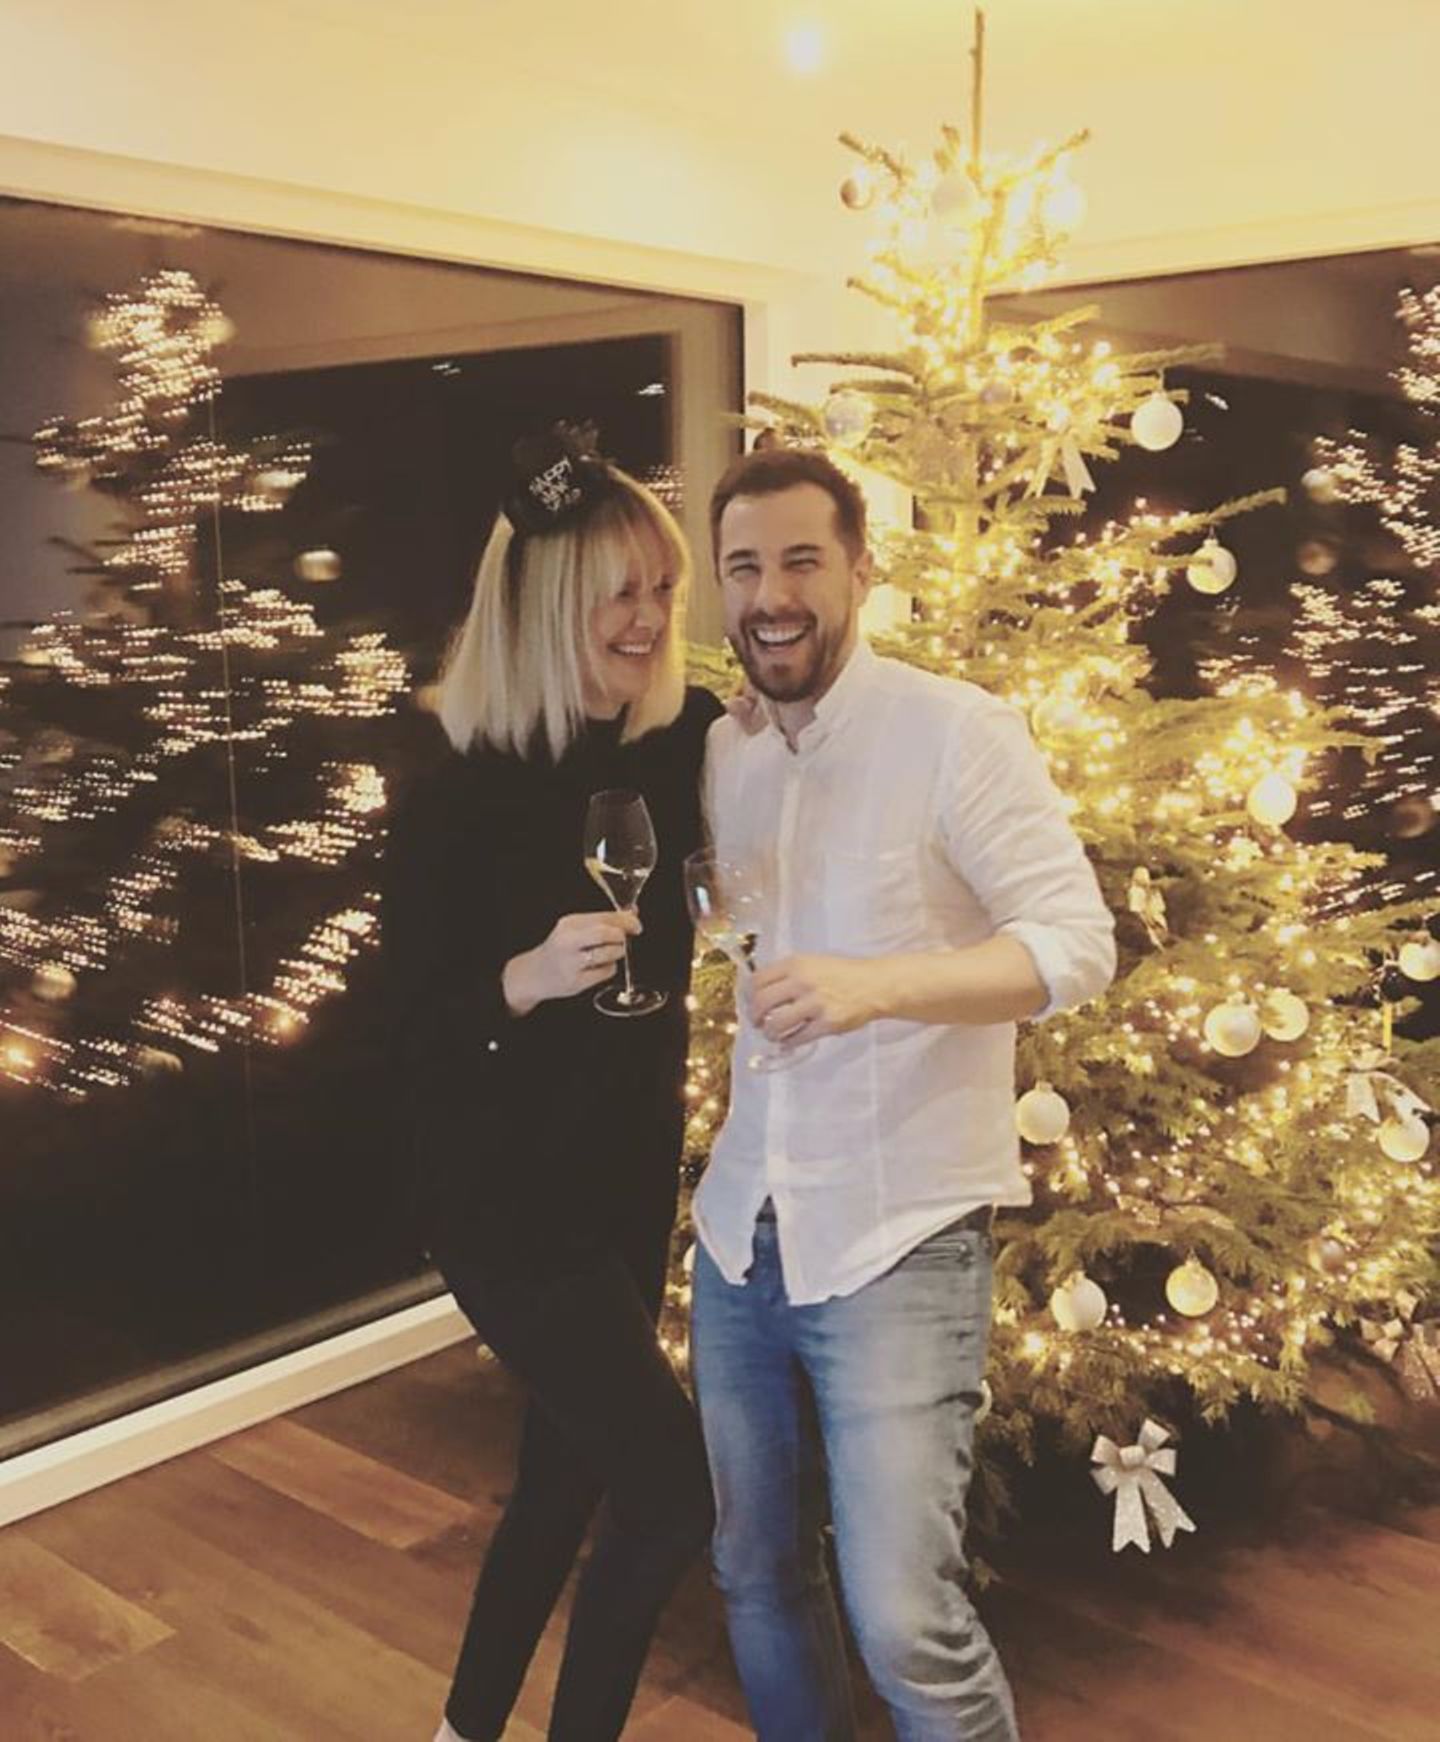 Bei Monica Meier-Ivancan und Ehemann Christian steht auch an Silvester der Weihnachtsbaum noch. So glücklich wie die beiden auf das neue Jahr anstoßen, kann 2017 nur gut werden.